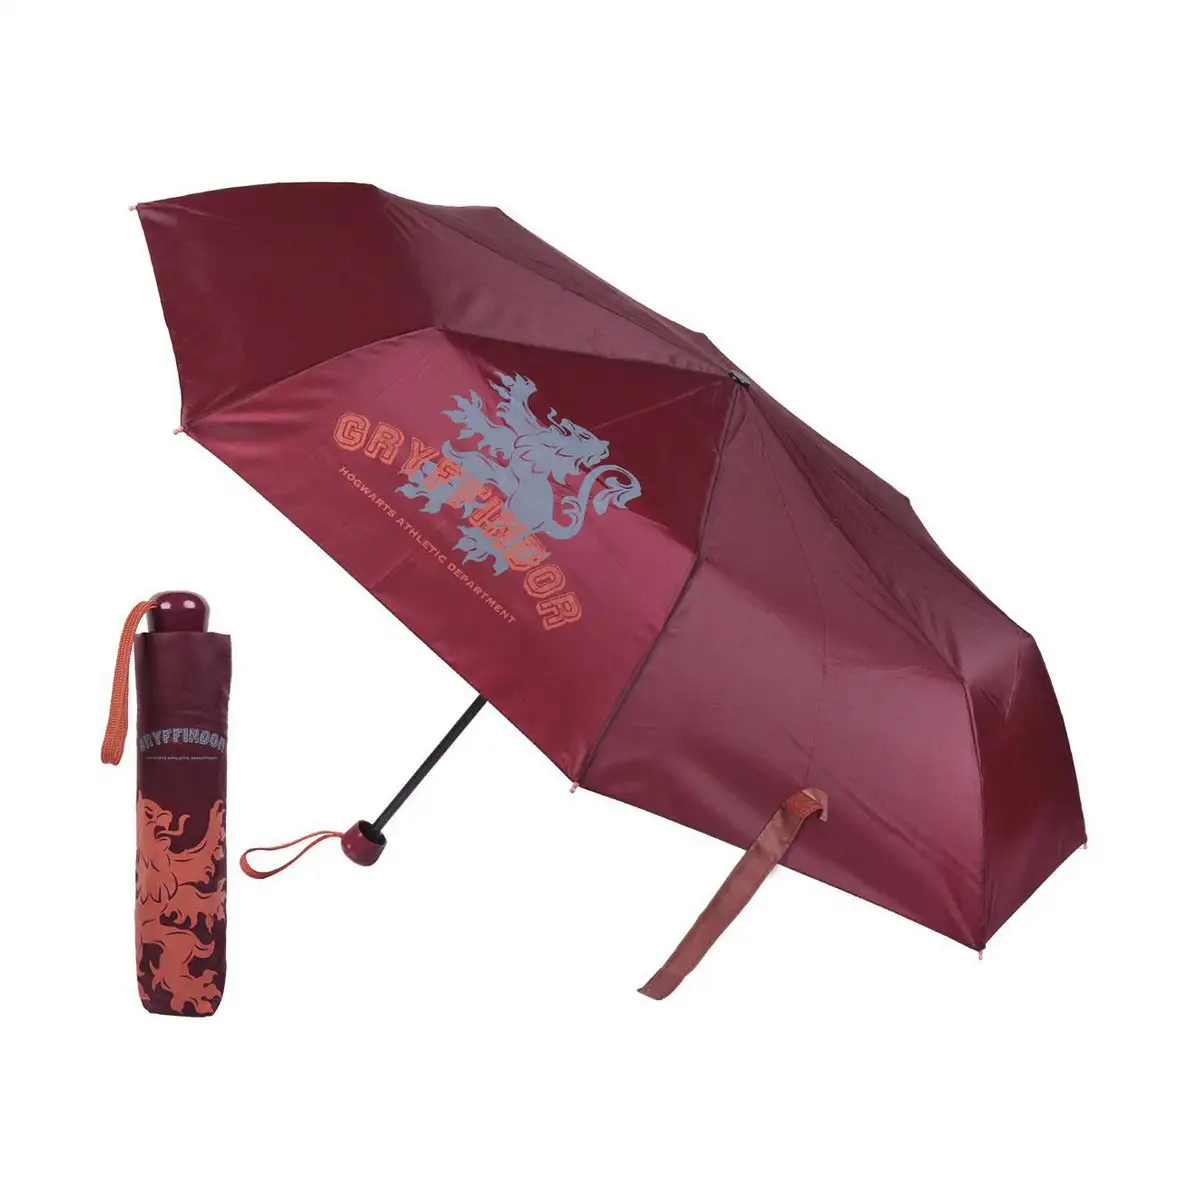 Parapluie pliable harry potter rouge ø 97 cm_2902. Bienvenue chez DIAYTAR SENEGAL - Où Votre Shopping Prend Vie. Découvrez notre univers et dénichez des trésors qui ajoutent de la couleur à votre quotidien.